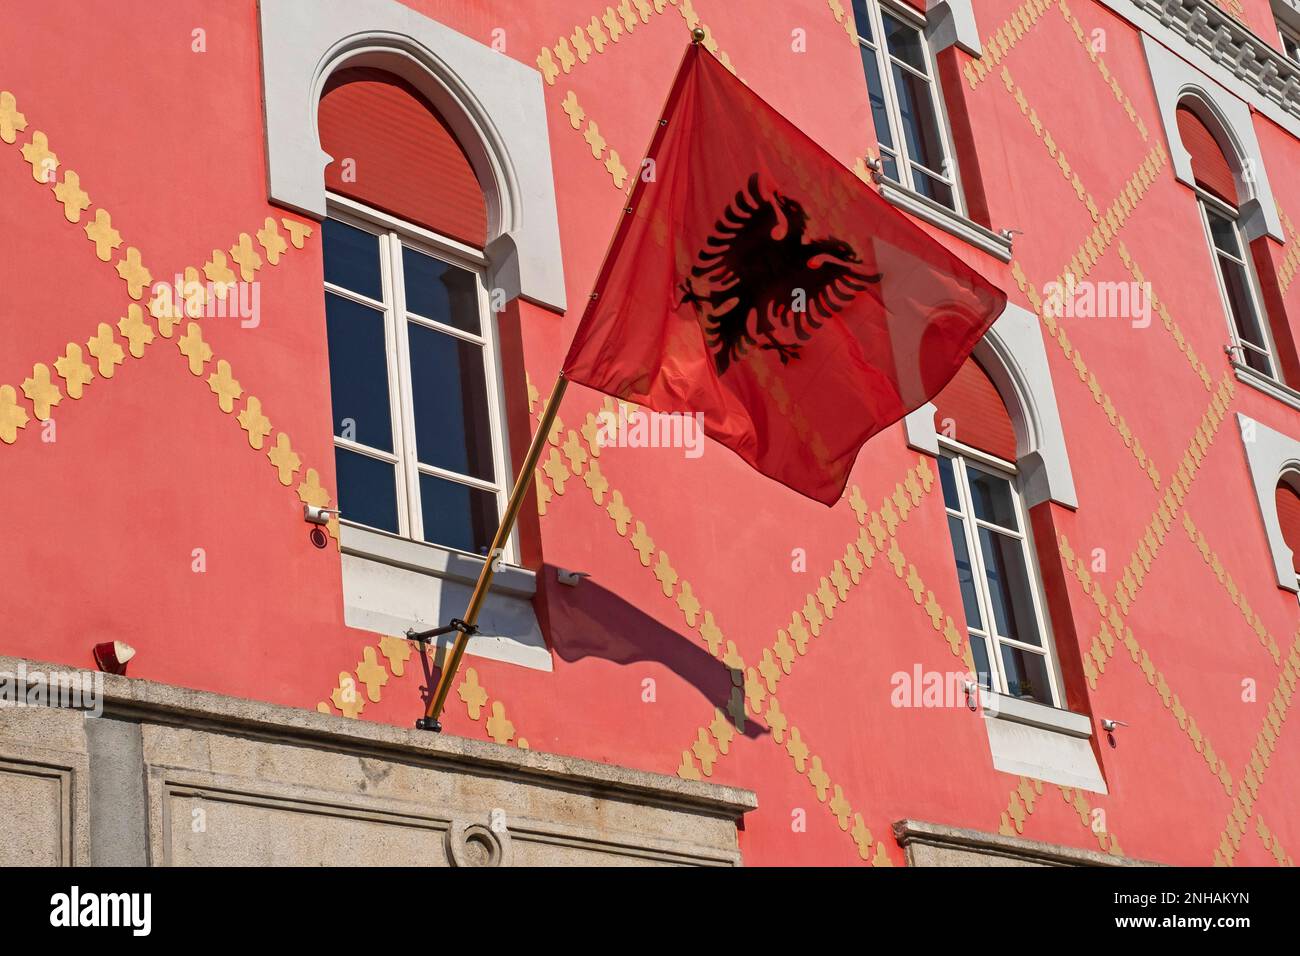 Bandiera rossa dell'Albania con l'aquila nera a doppia testa dalla silhouette sulla facciata a Tirana, capitale dell'Albania Foto Stock